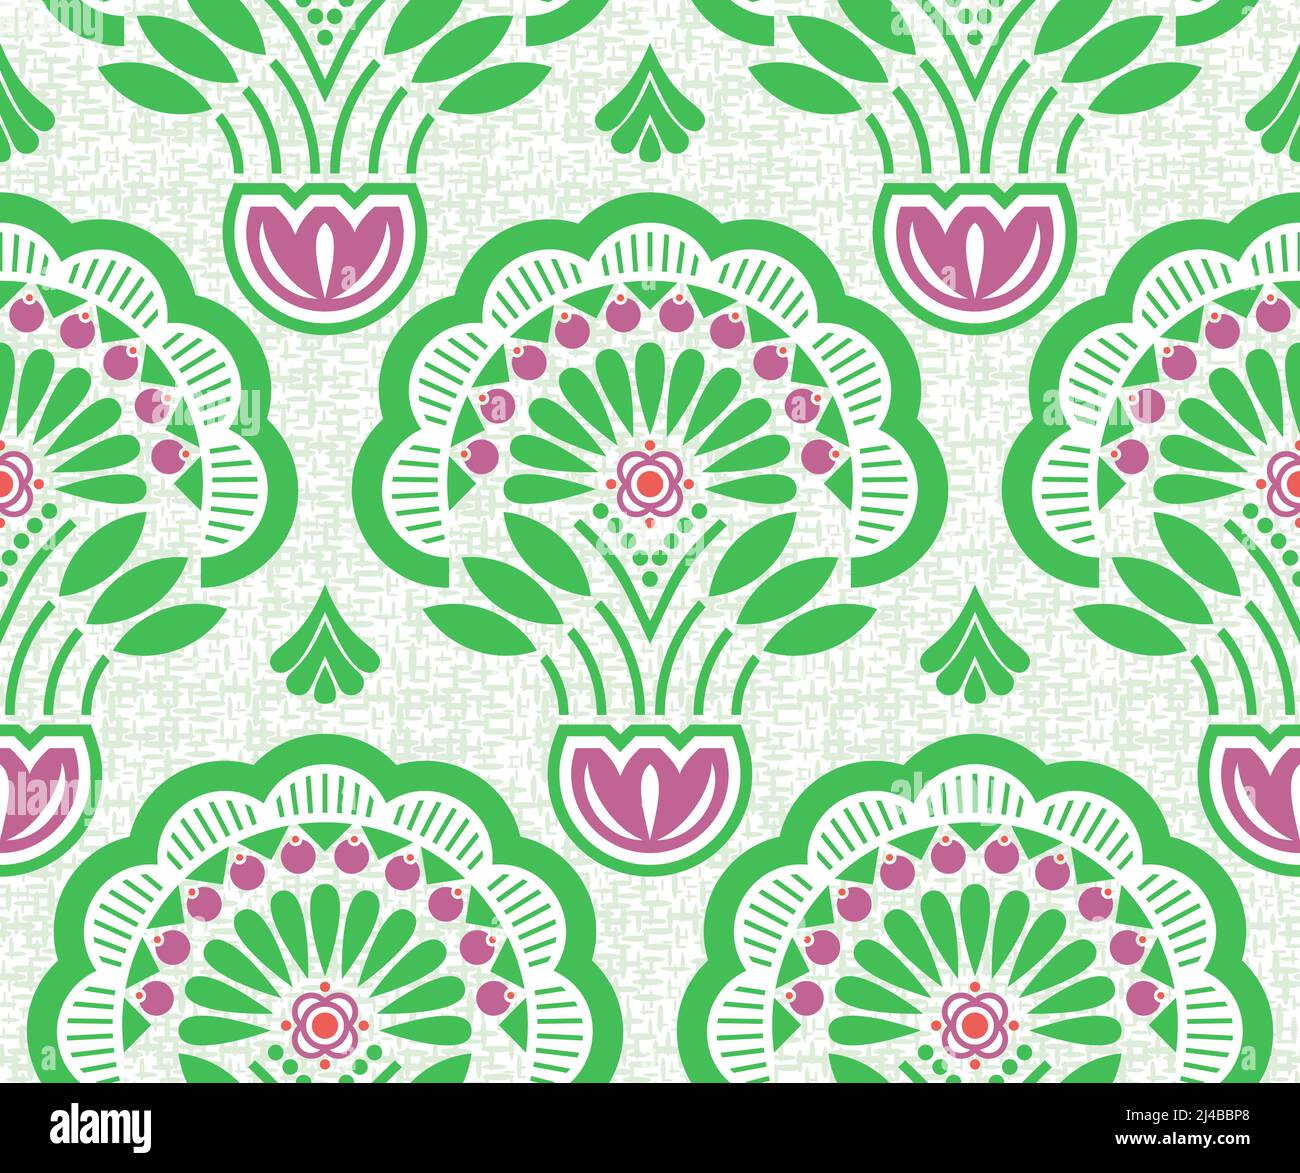 La géométrie florale moderne stylisée avec texture représente la nature printanière en fleurs, la verdure, la vie végétale, les plantes en croissance, la végétation verte luxuriante en été Illustration de Vecteur